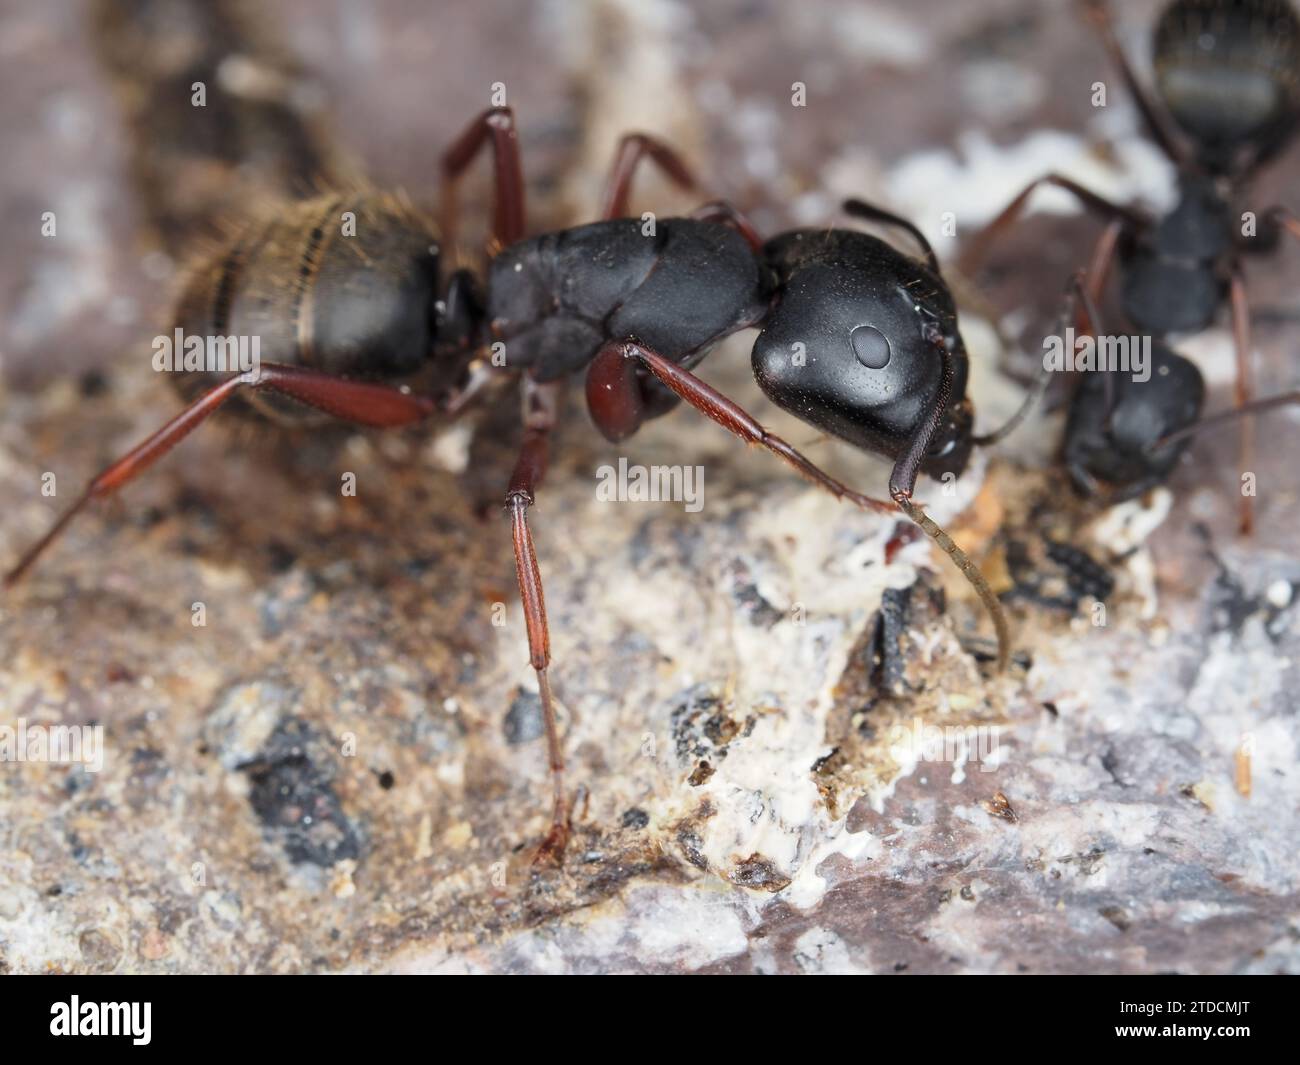 Ameise identifiziert als Camponotus modoc (westliche Tischlerei Ameise) - eine schwarze Tischlerei Ameise mit dunkelroten Beinen, in Oregon, USA Stockfoto